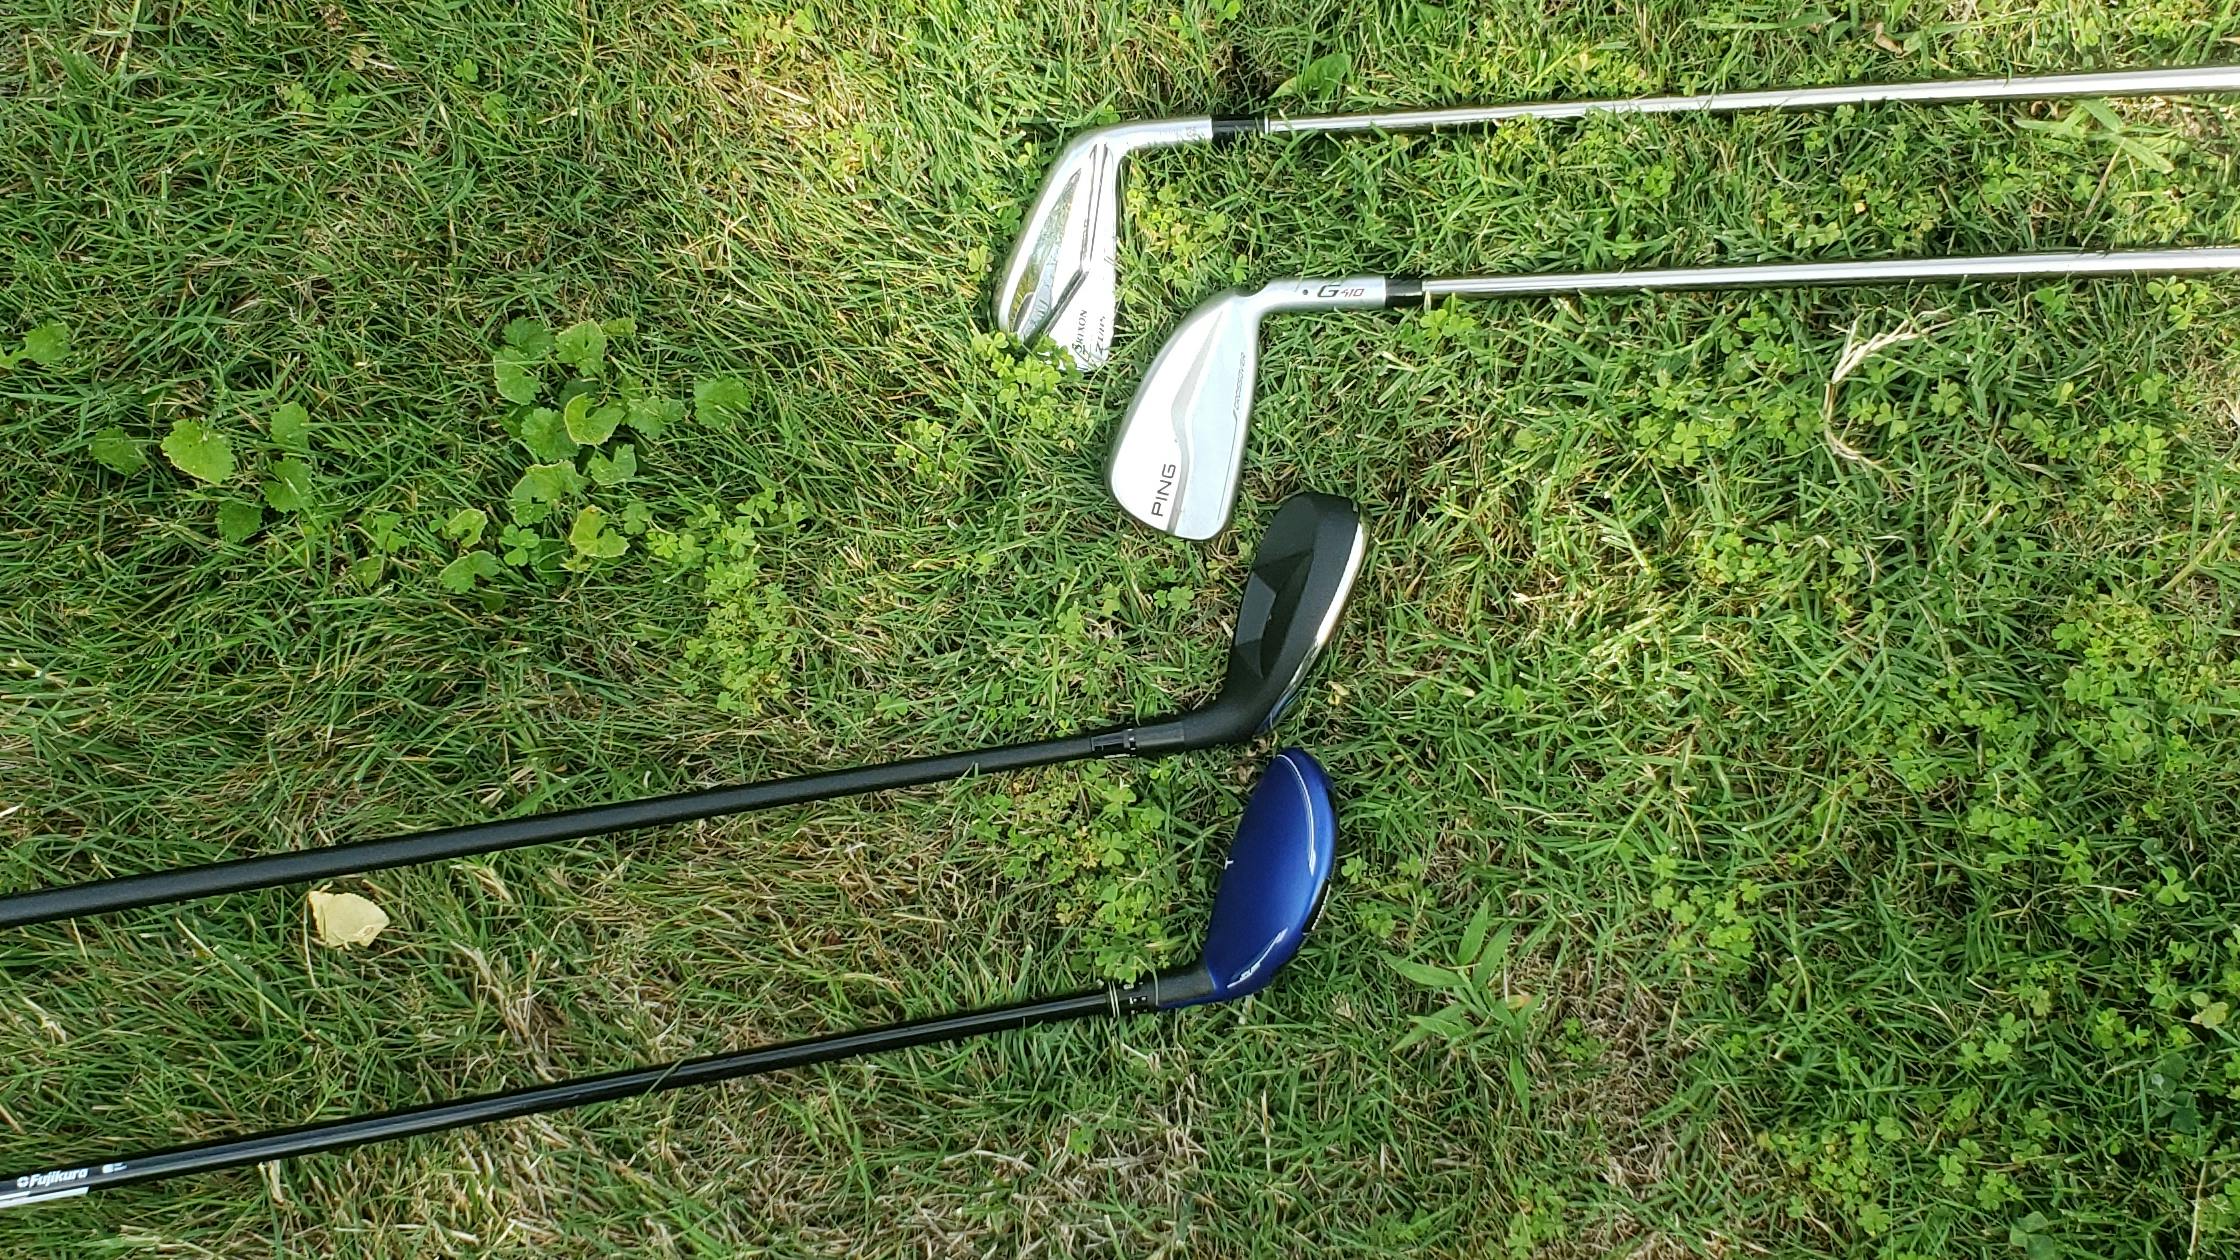 Four golf clubs lie on the grass